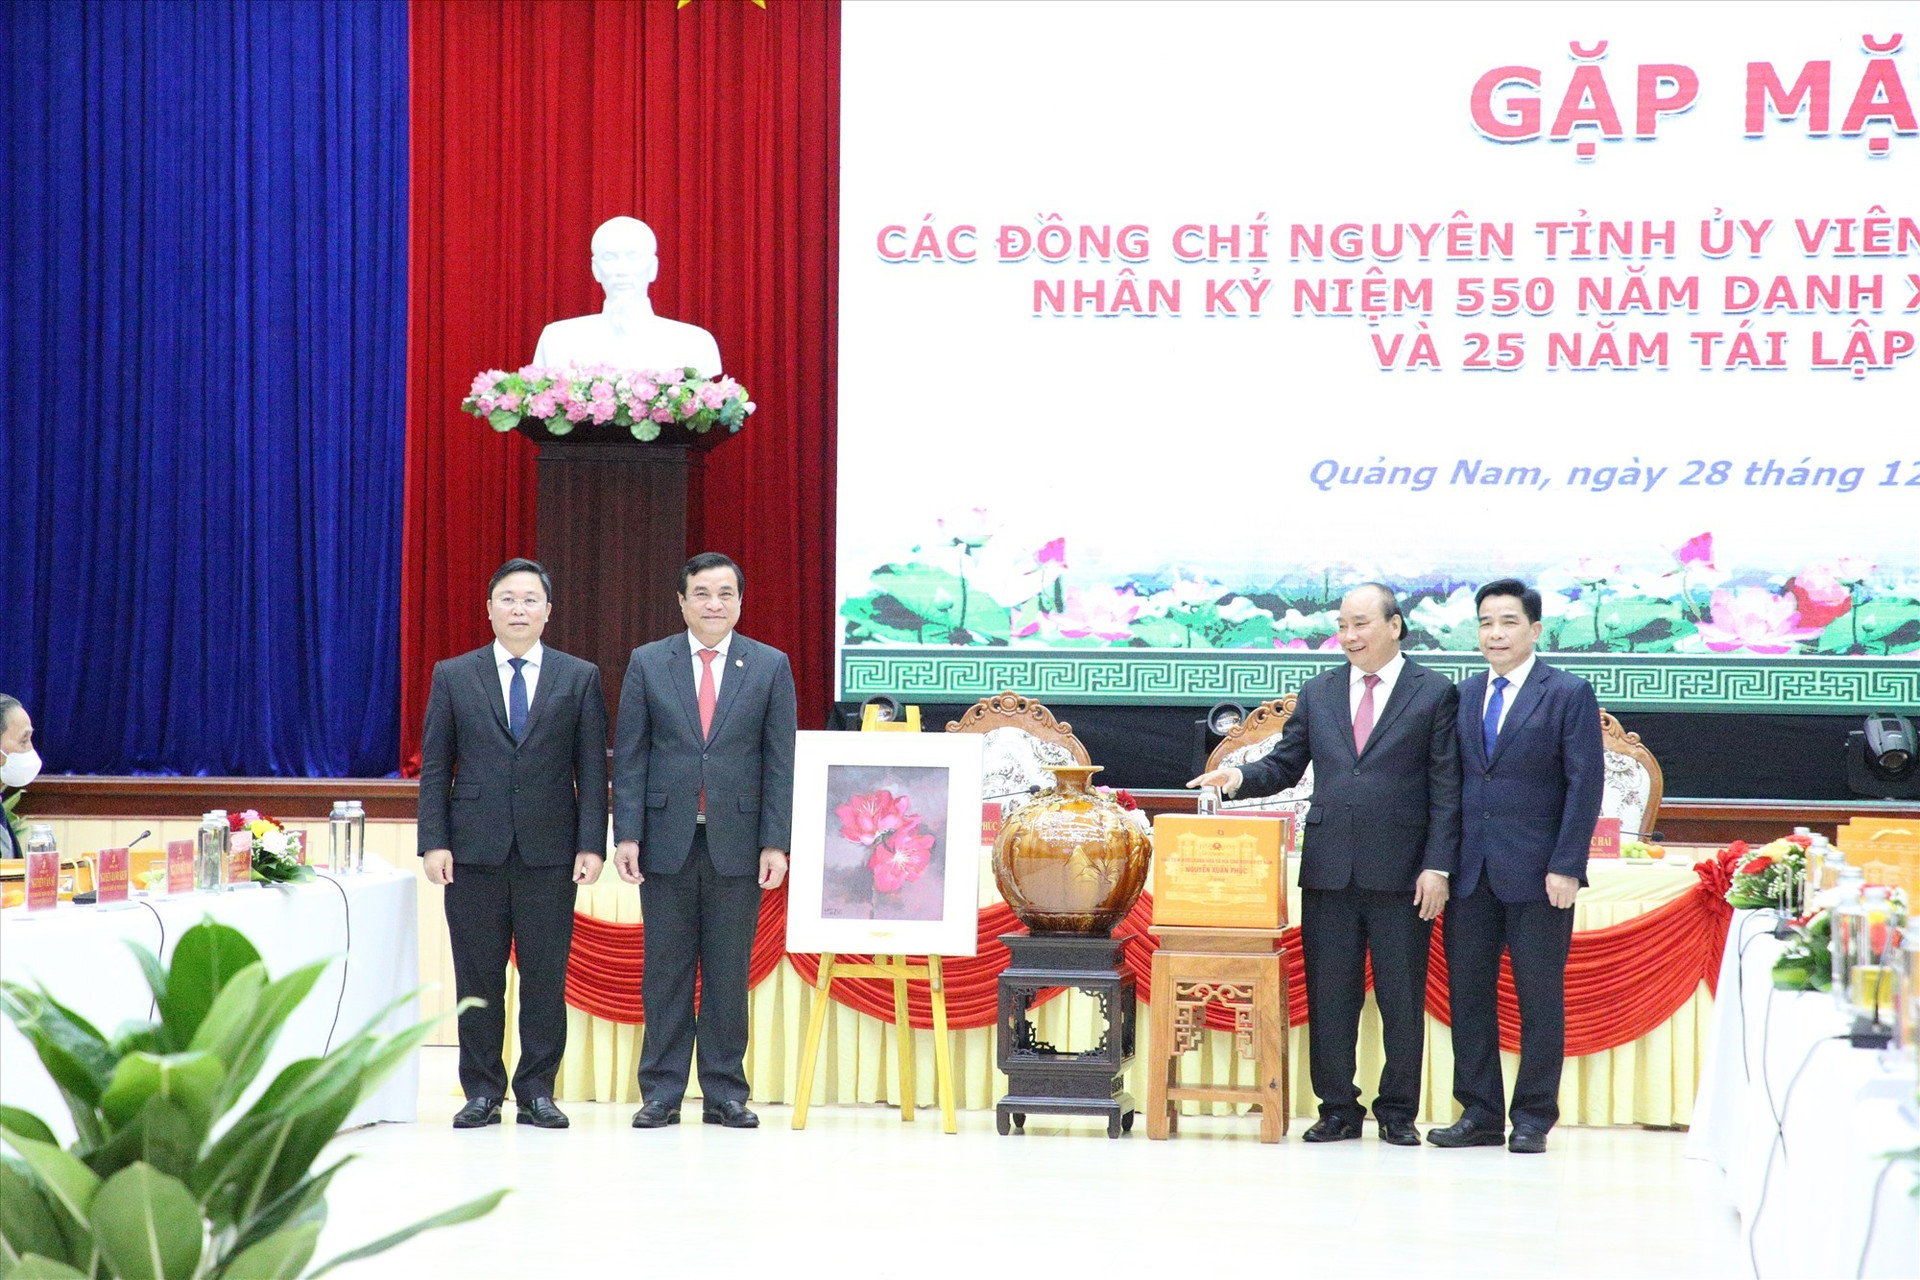 Chủ tịch nước Nguyễn Xuân Phúc tặng quà các đồng chí lãnh đạo tỉnh. Ảnh; PV